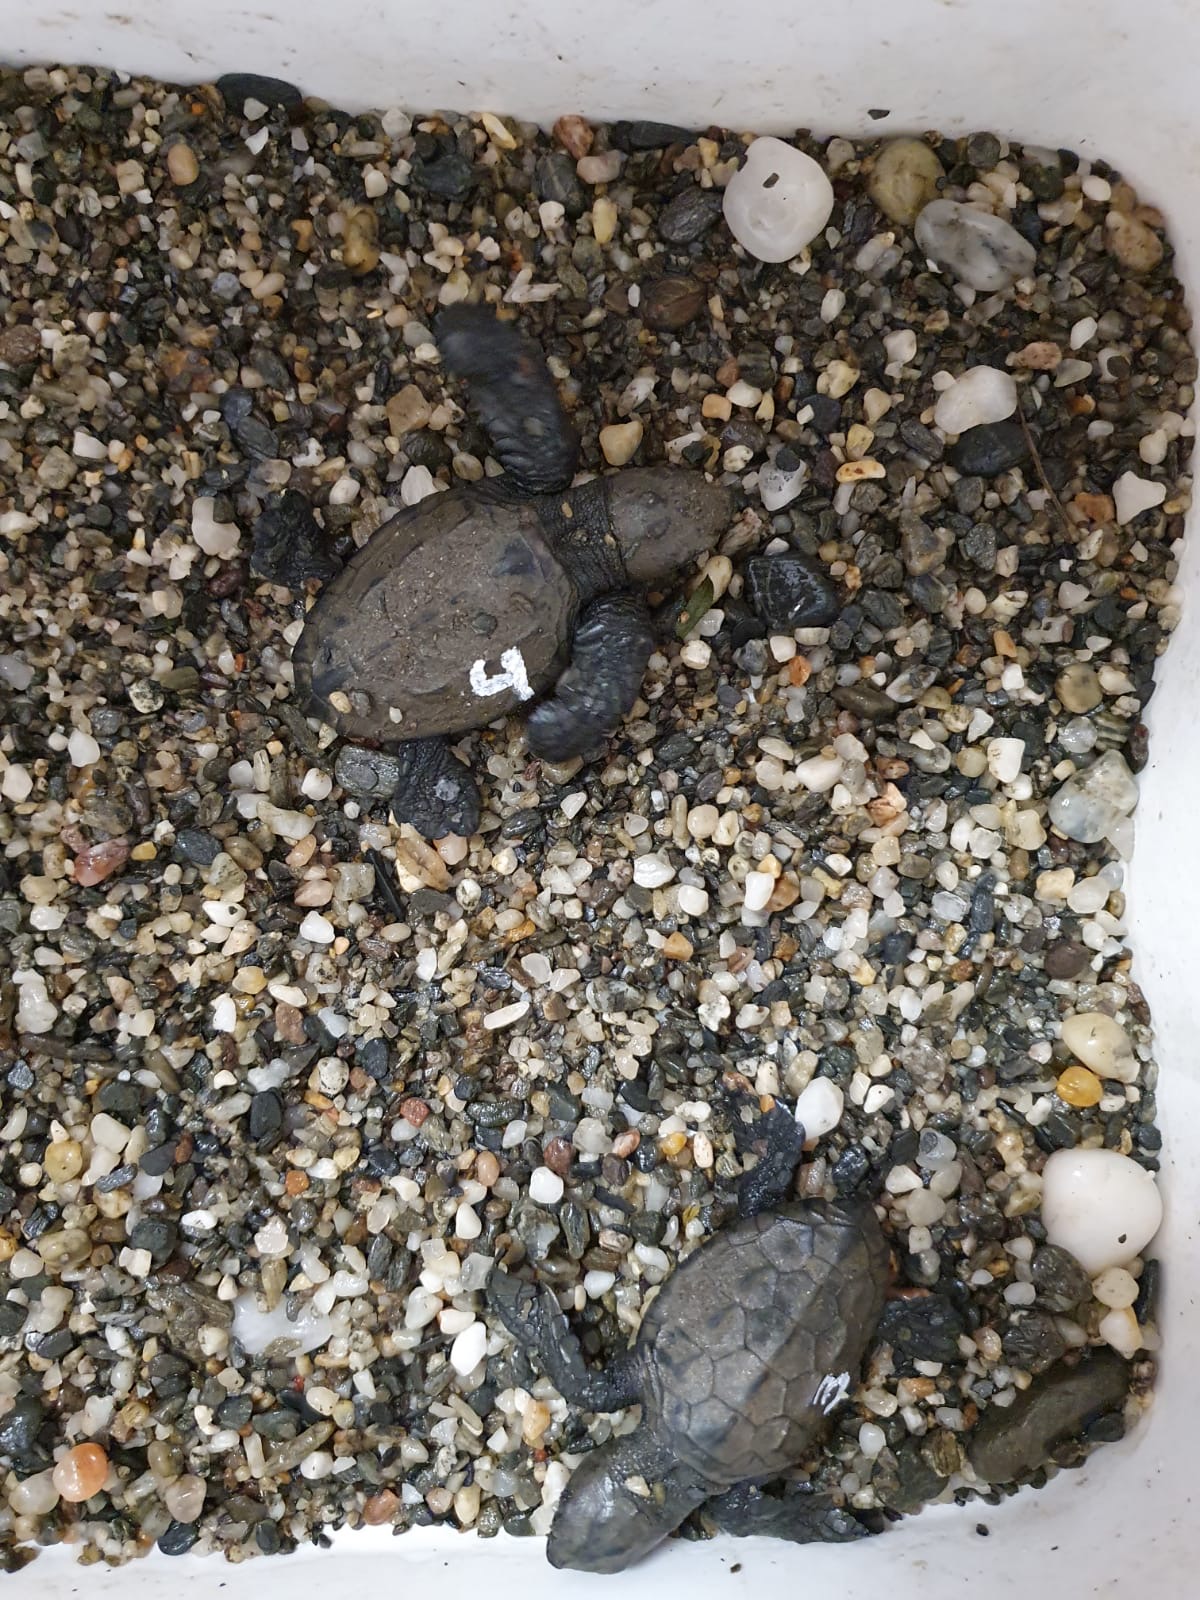 Aspecto de las dos nuevas crías de tortuga recuperadas. Imagen: CARM